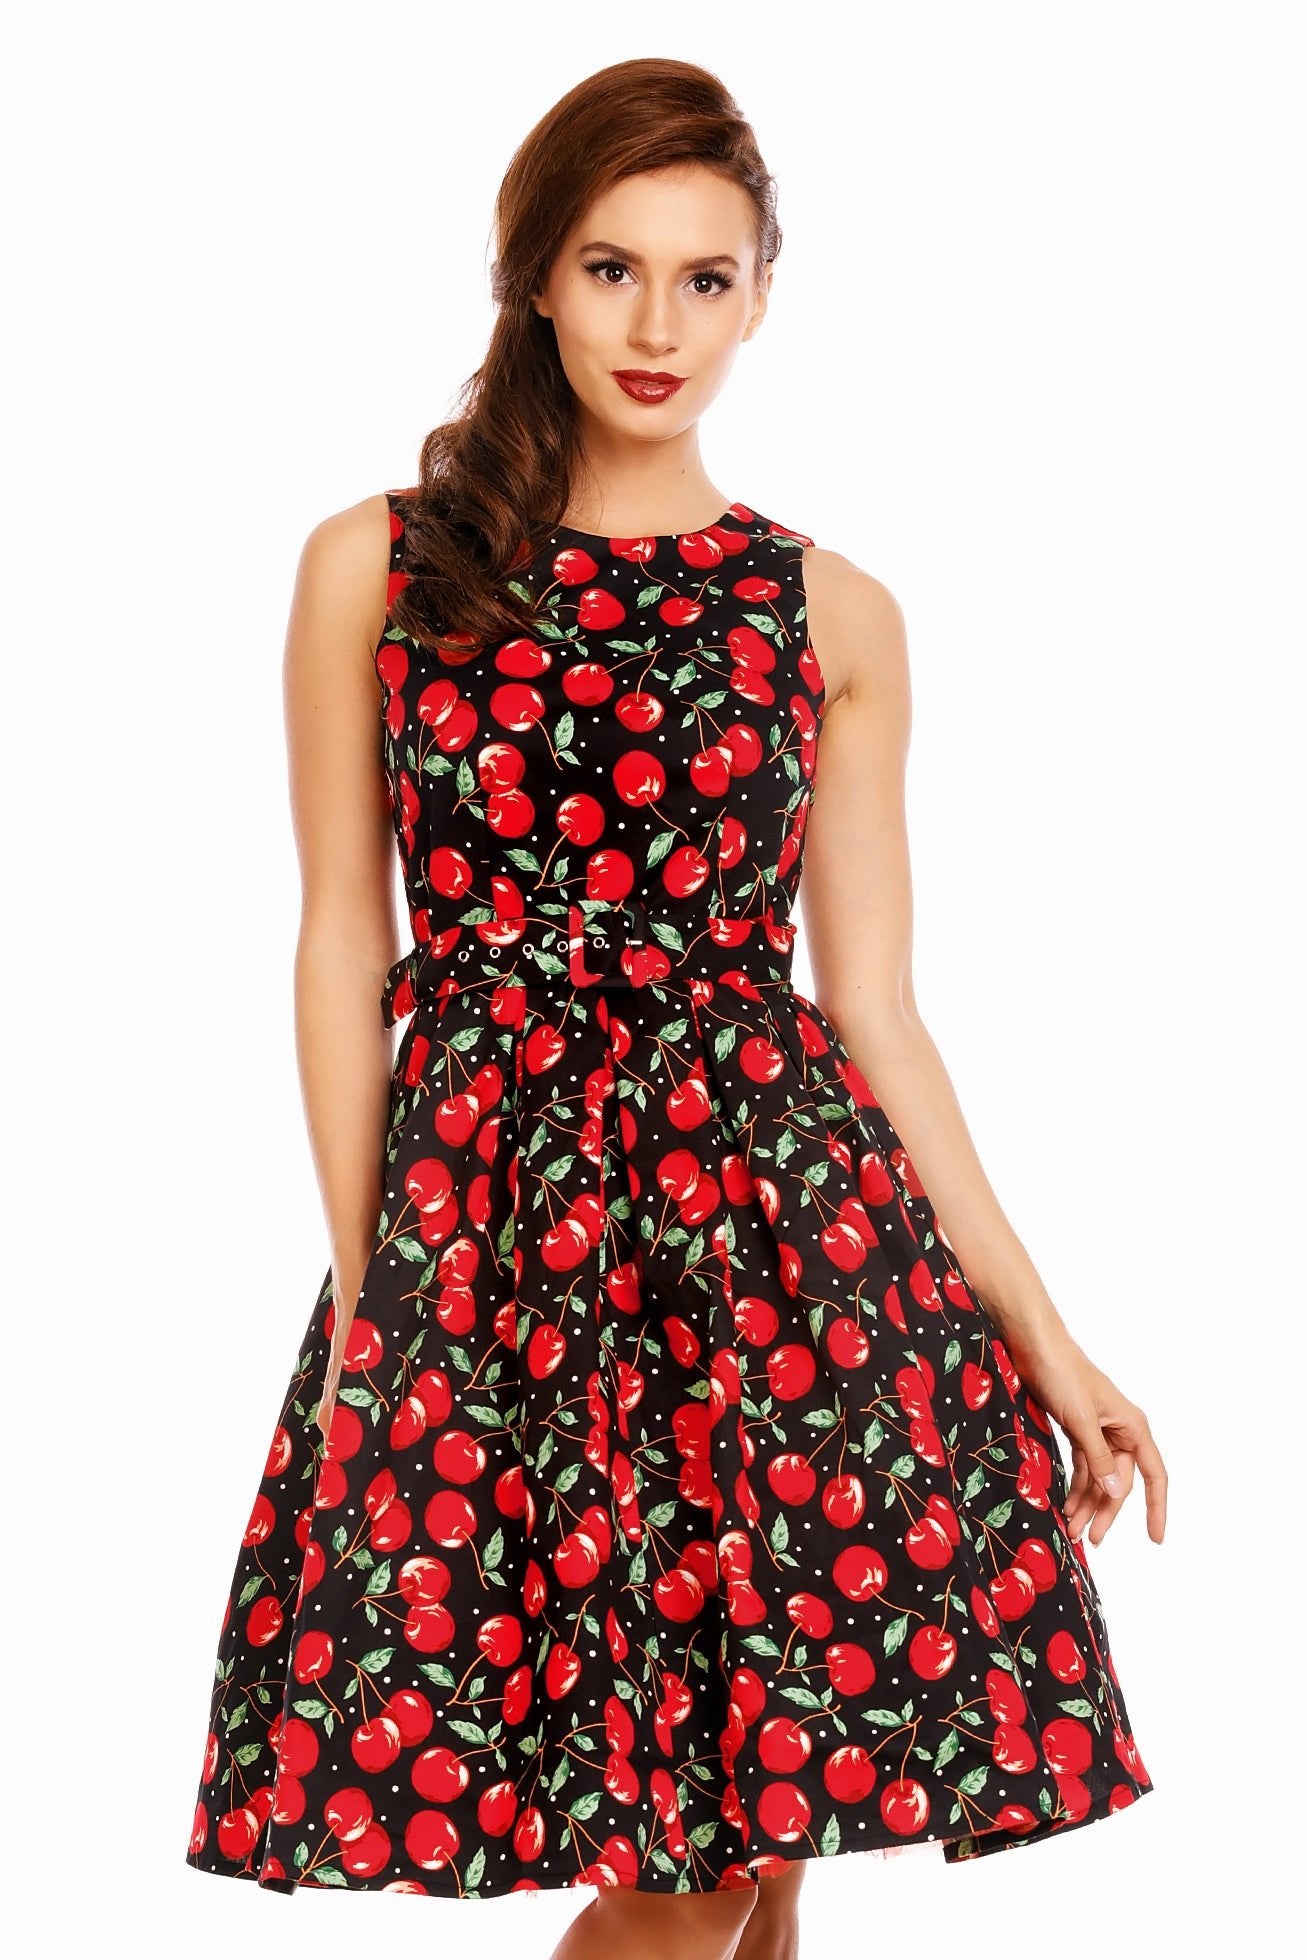 Women's Retro Cherry Swing Dress